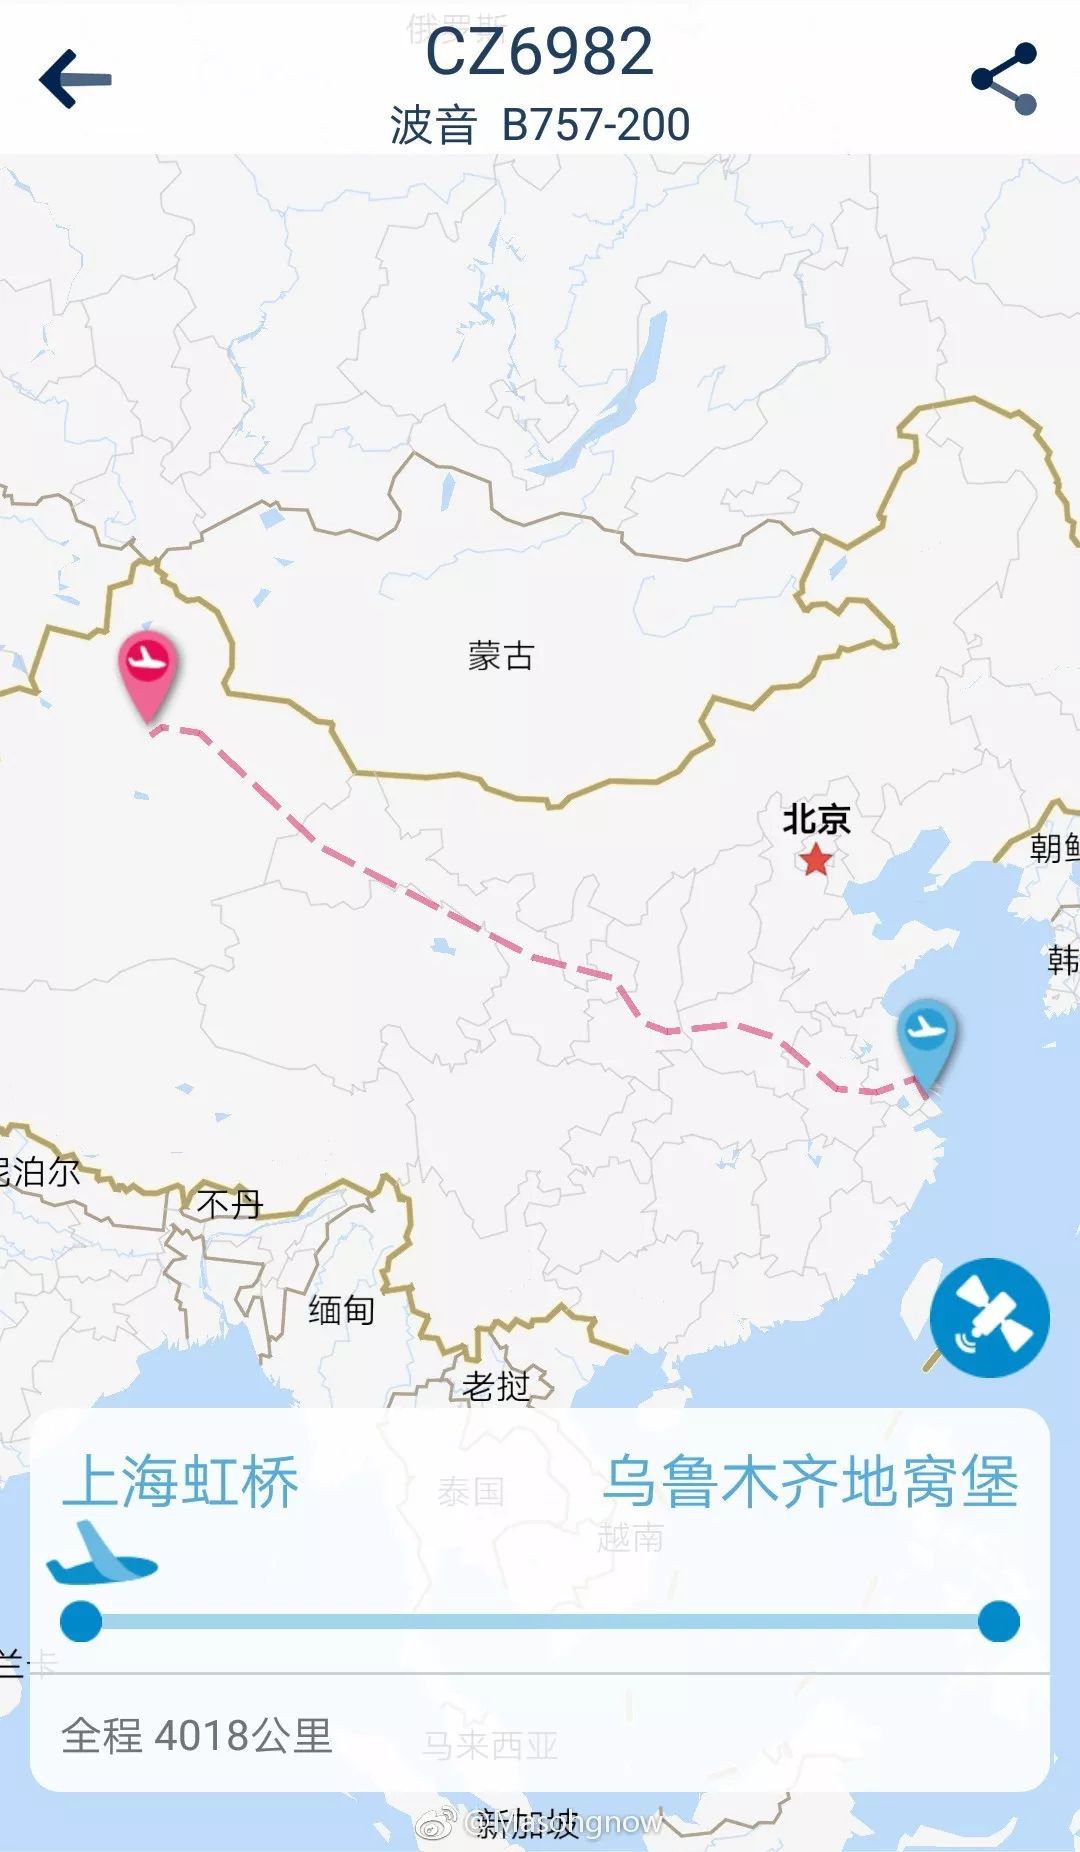 南航app显示国庆期间b757被安排执飞广州=乌鲁木齐,北京=乌鲁木齐航线